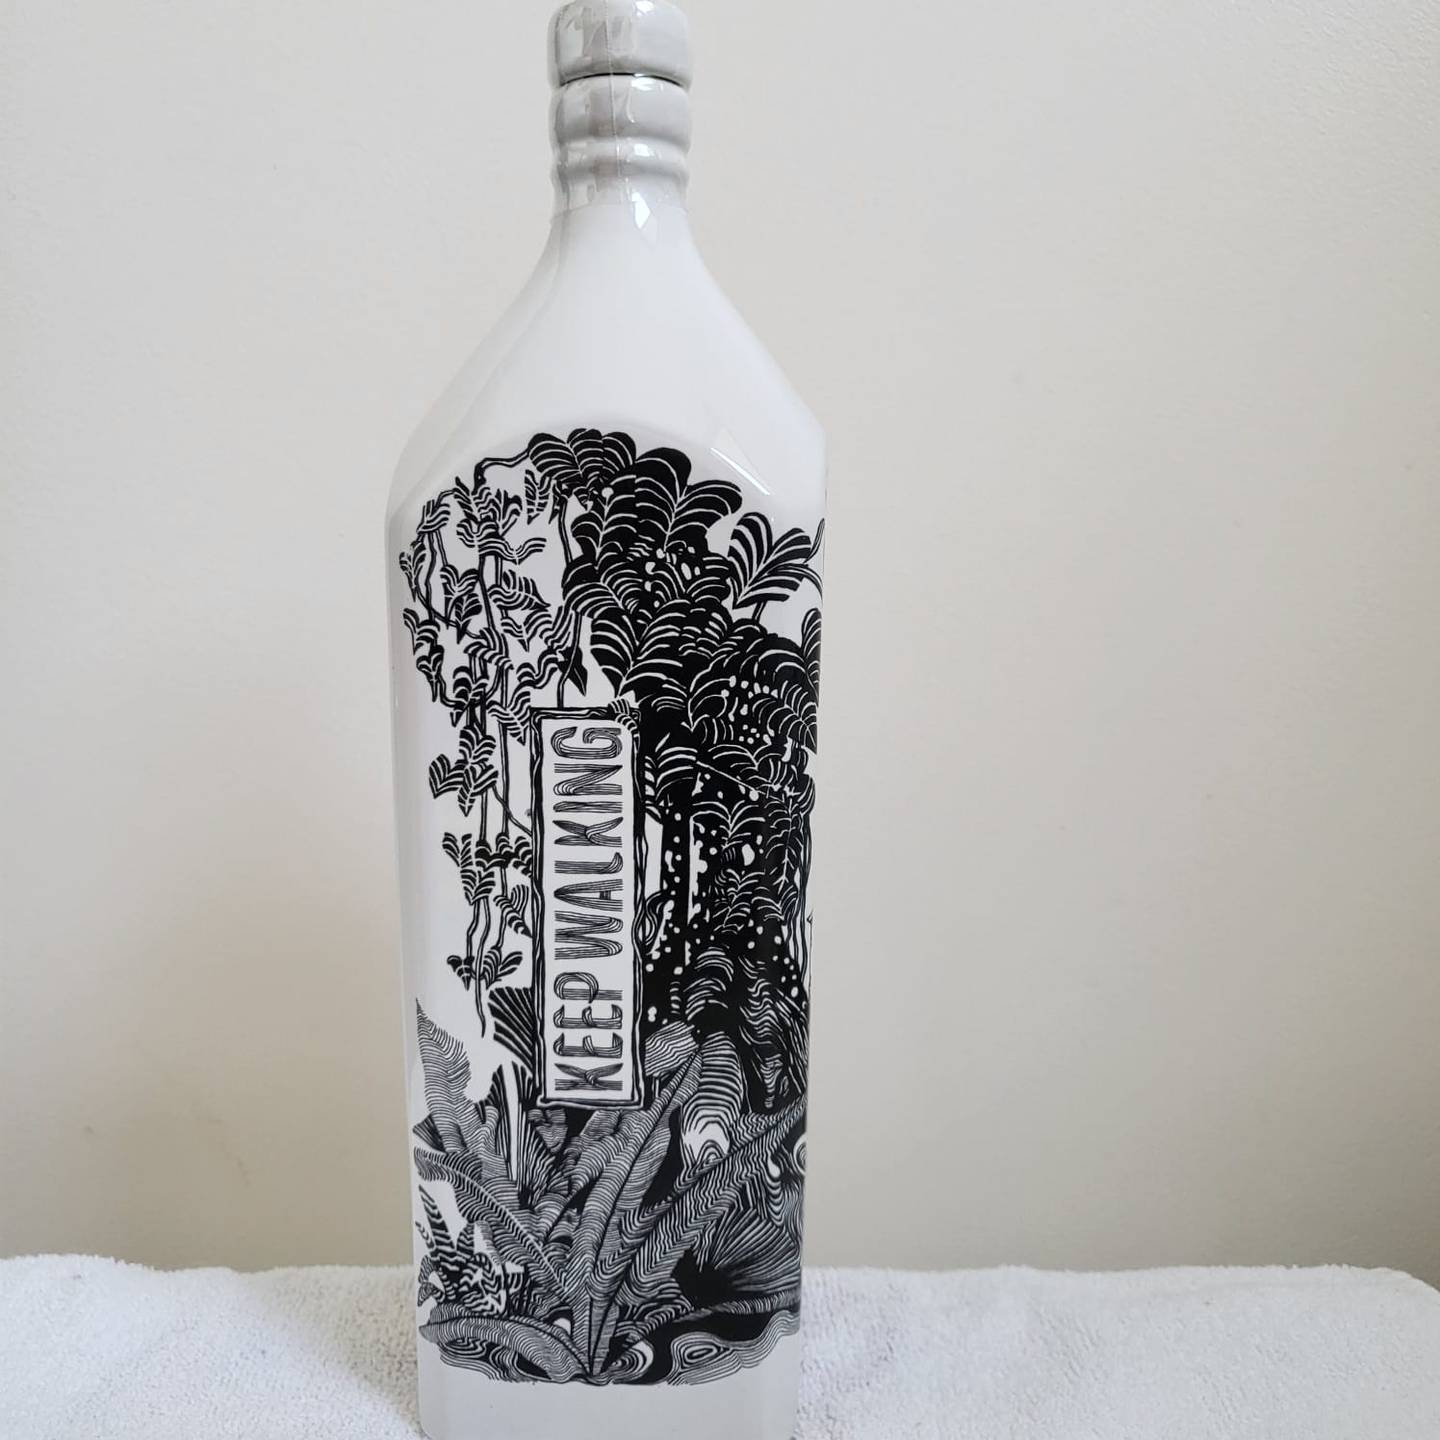 El artista costarricense Christian Wedel fue seleccionado en el “equipo mundial” de once pintores para con su arte ilustrar una botella muy exclusiva del mundialmente famoso whisky Johnny Walker.